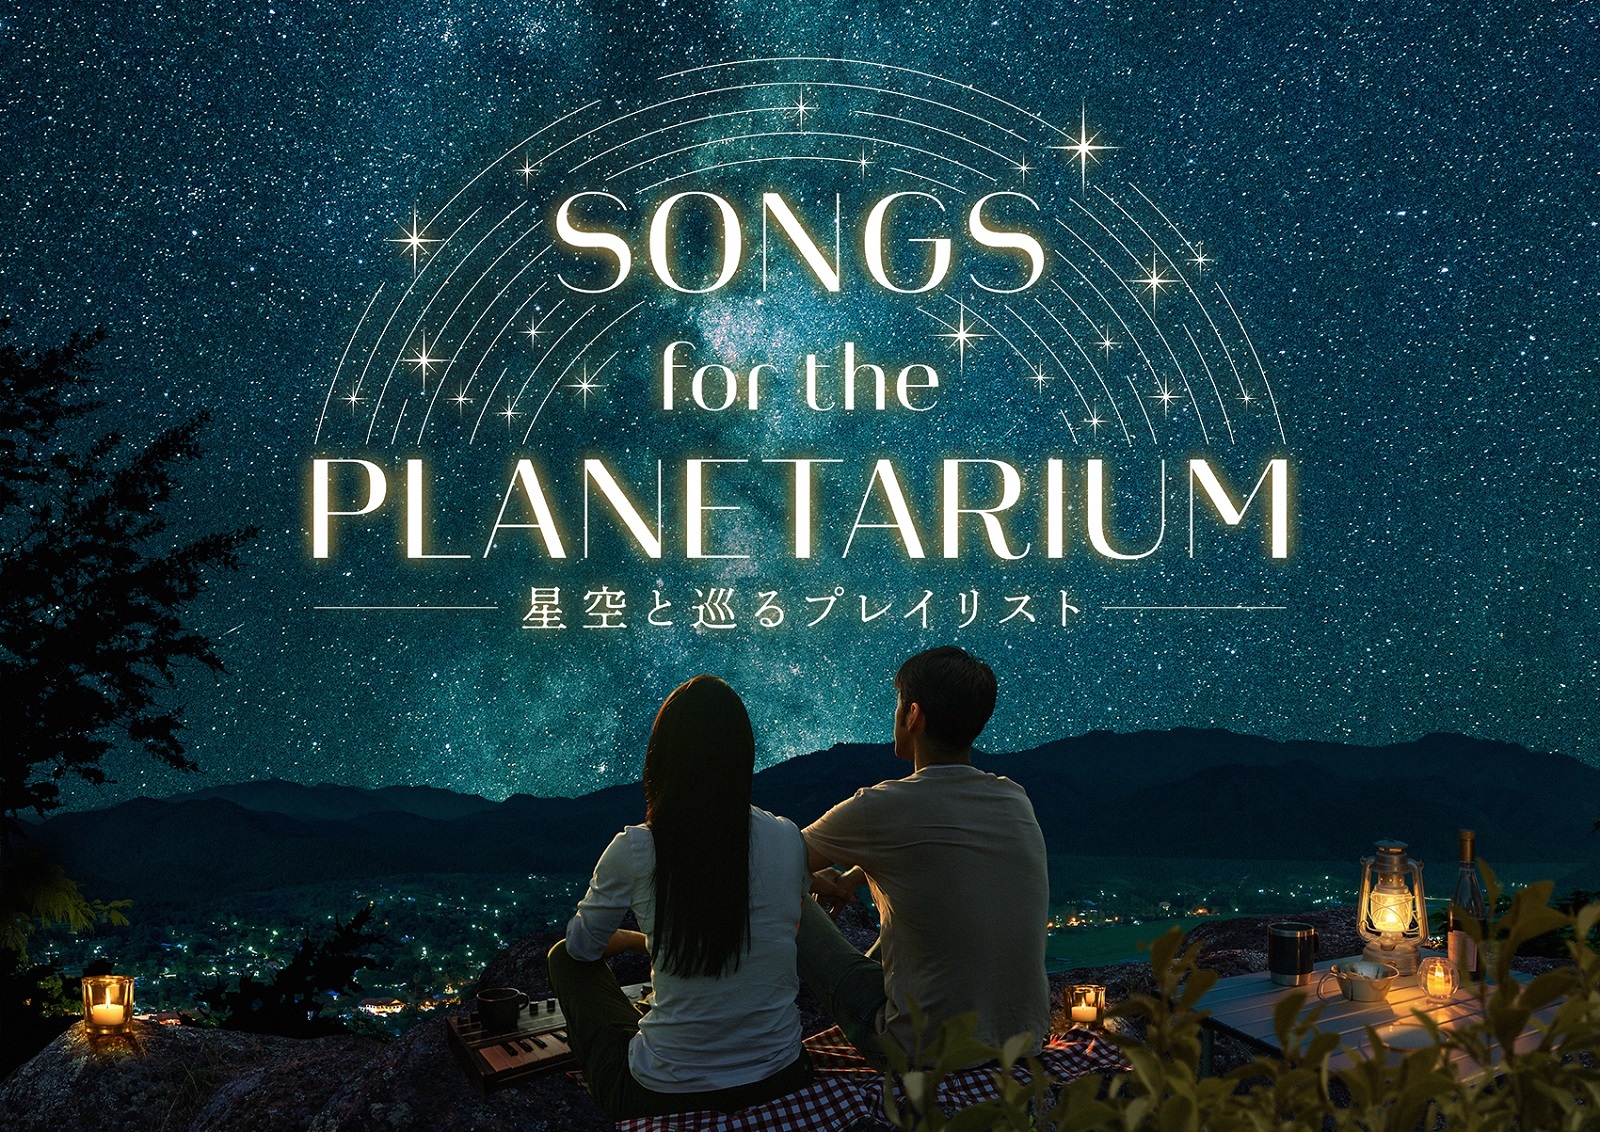 神谷浩史ナビゲートの人気作、新シリーズ上映決定
「Songs for the Planetarium 星空と巡るプレイリスト」
Perfume、Aimer、絢香、Coccoの名曲をプラネタリウムで